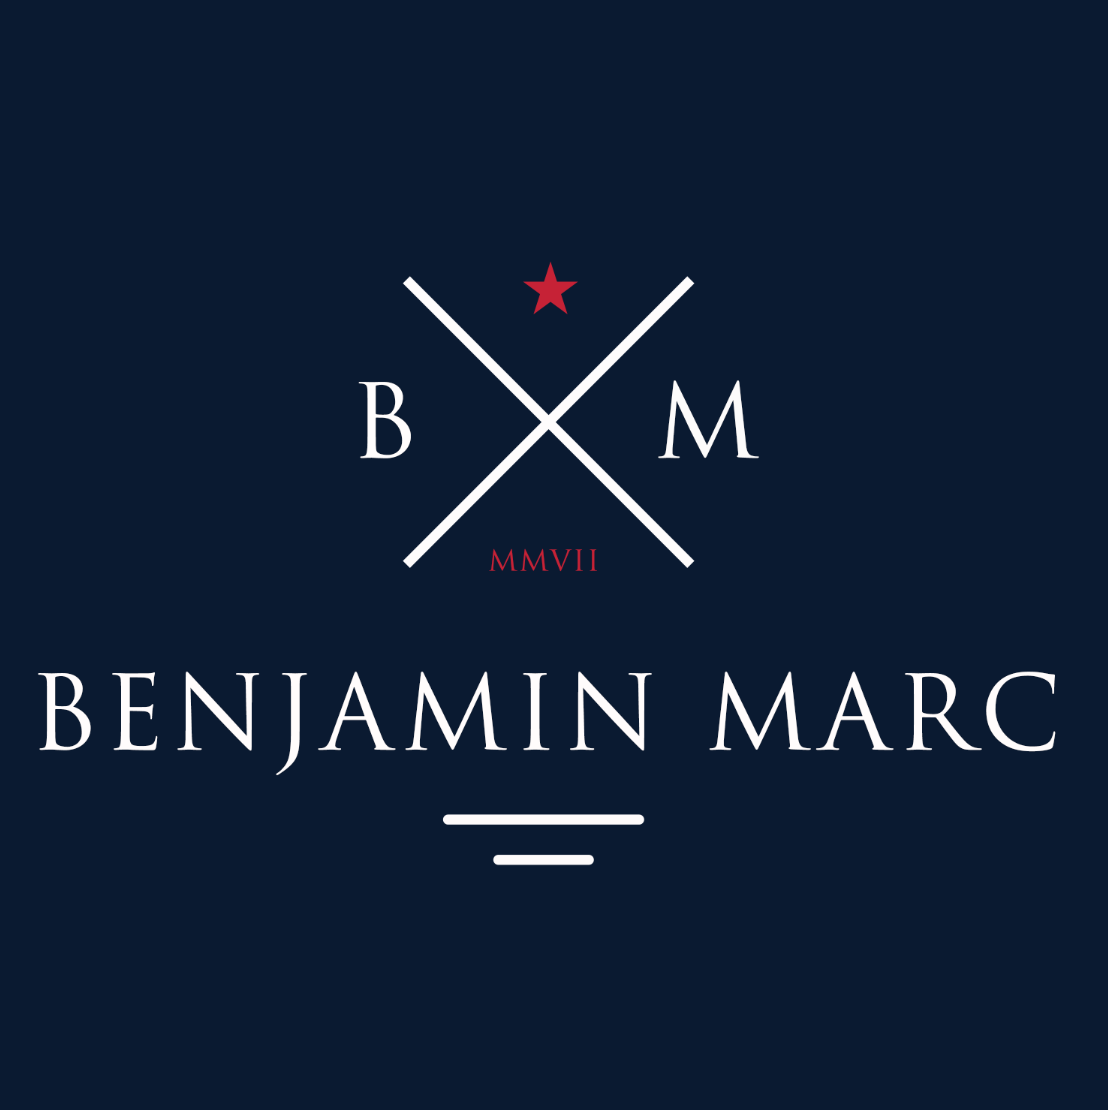 Benjamin Marc